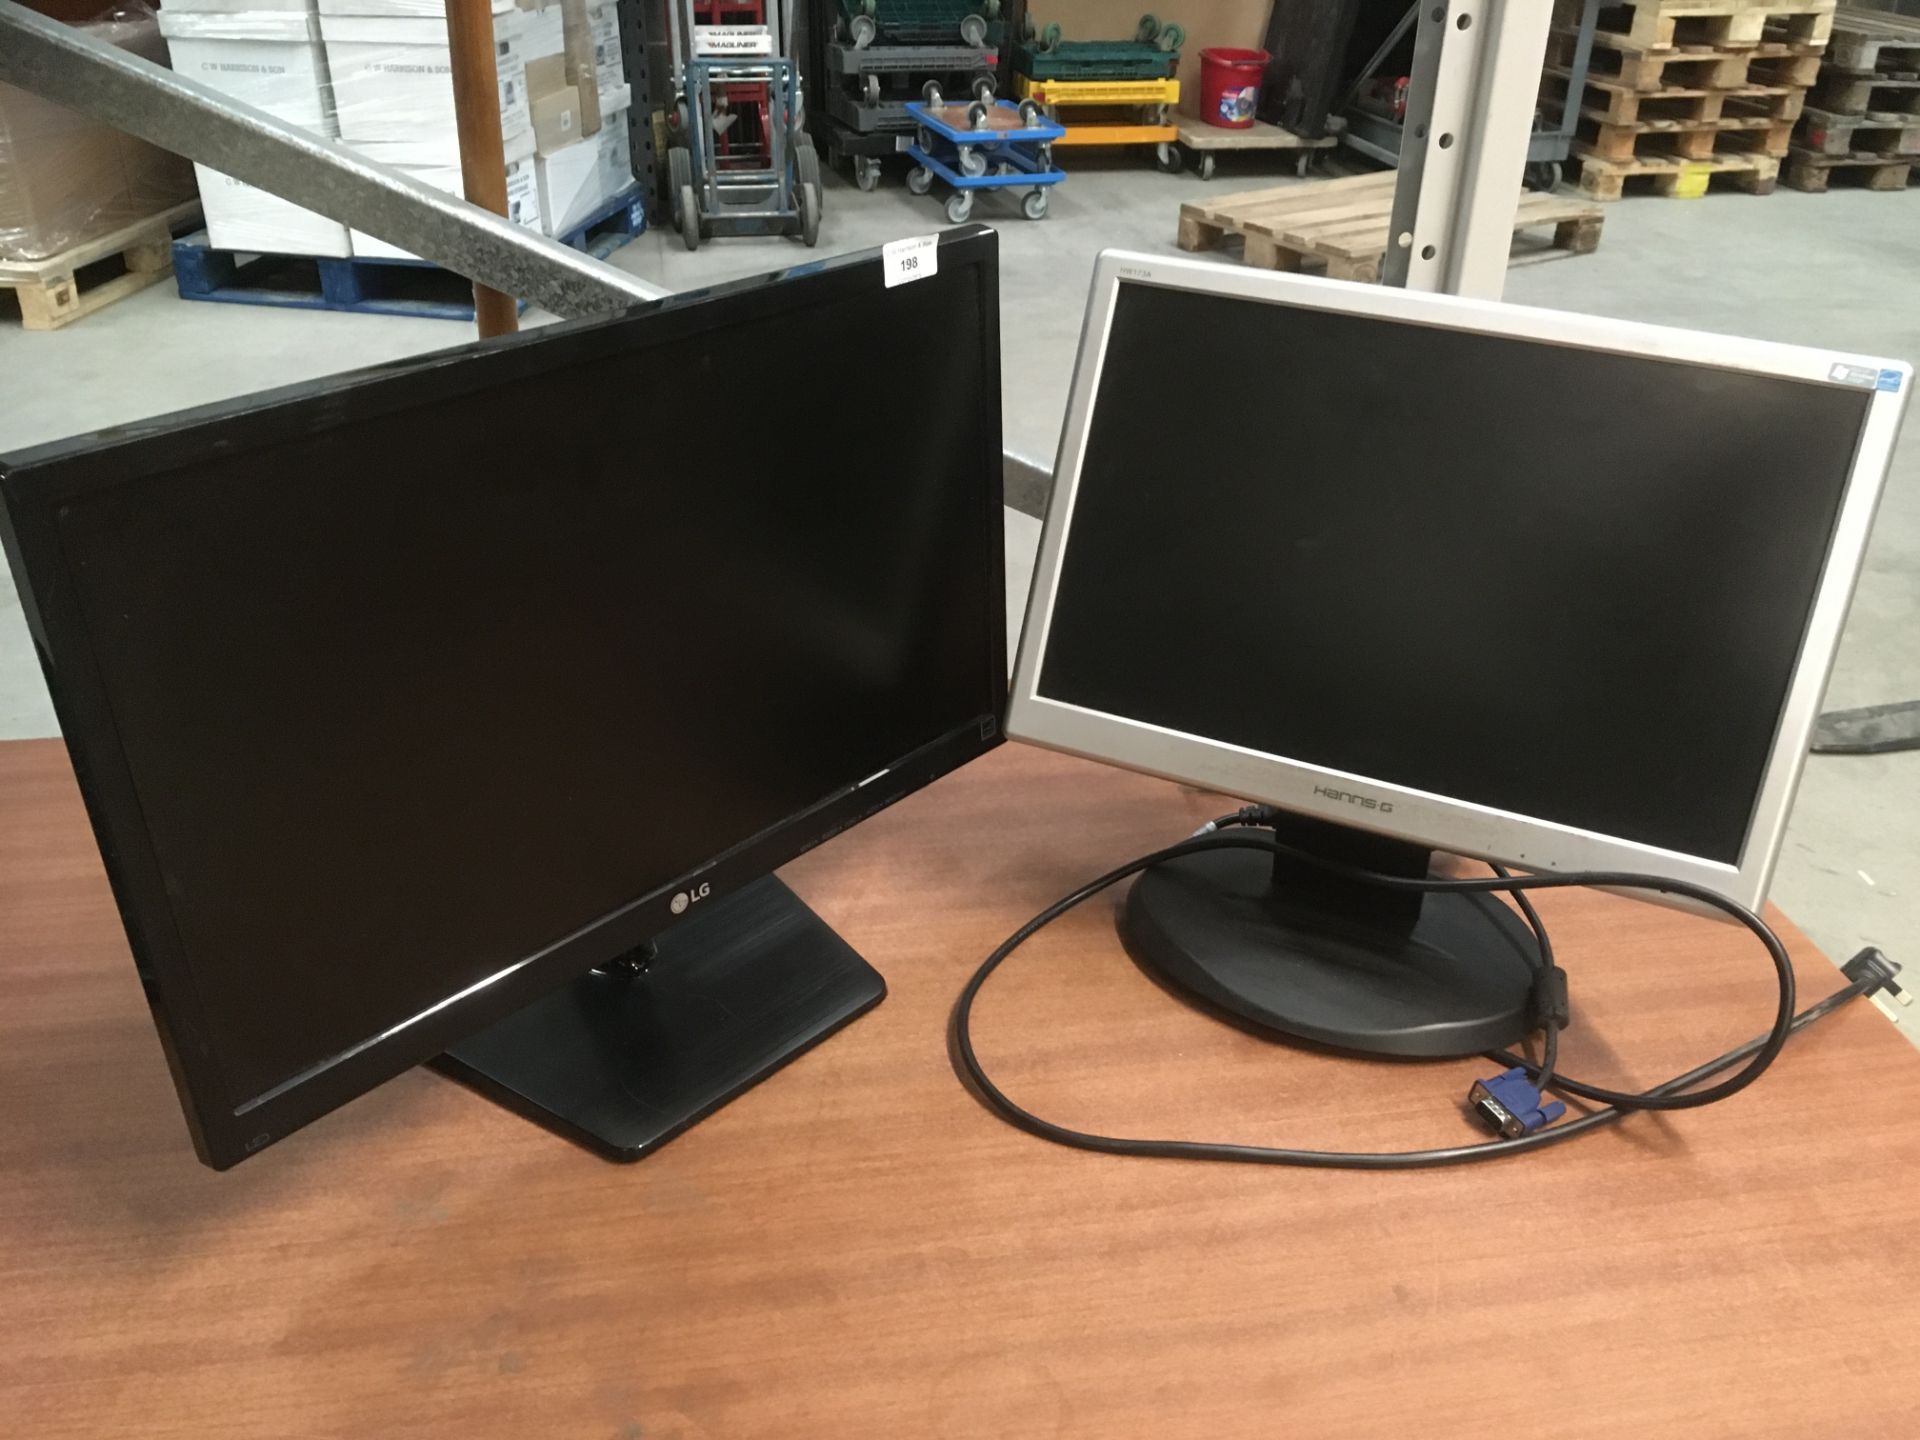 2 x items - LG 22M37A-B 22" LCD monitor and a Hanns G HW173A 17" LCD monitor